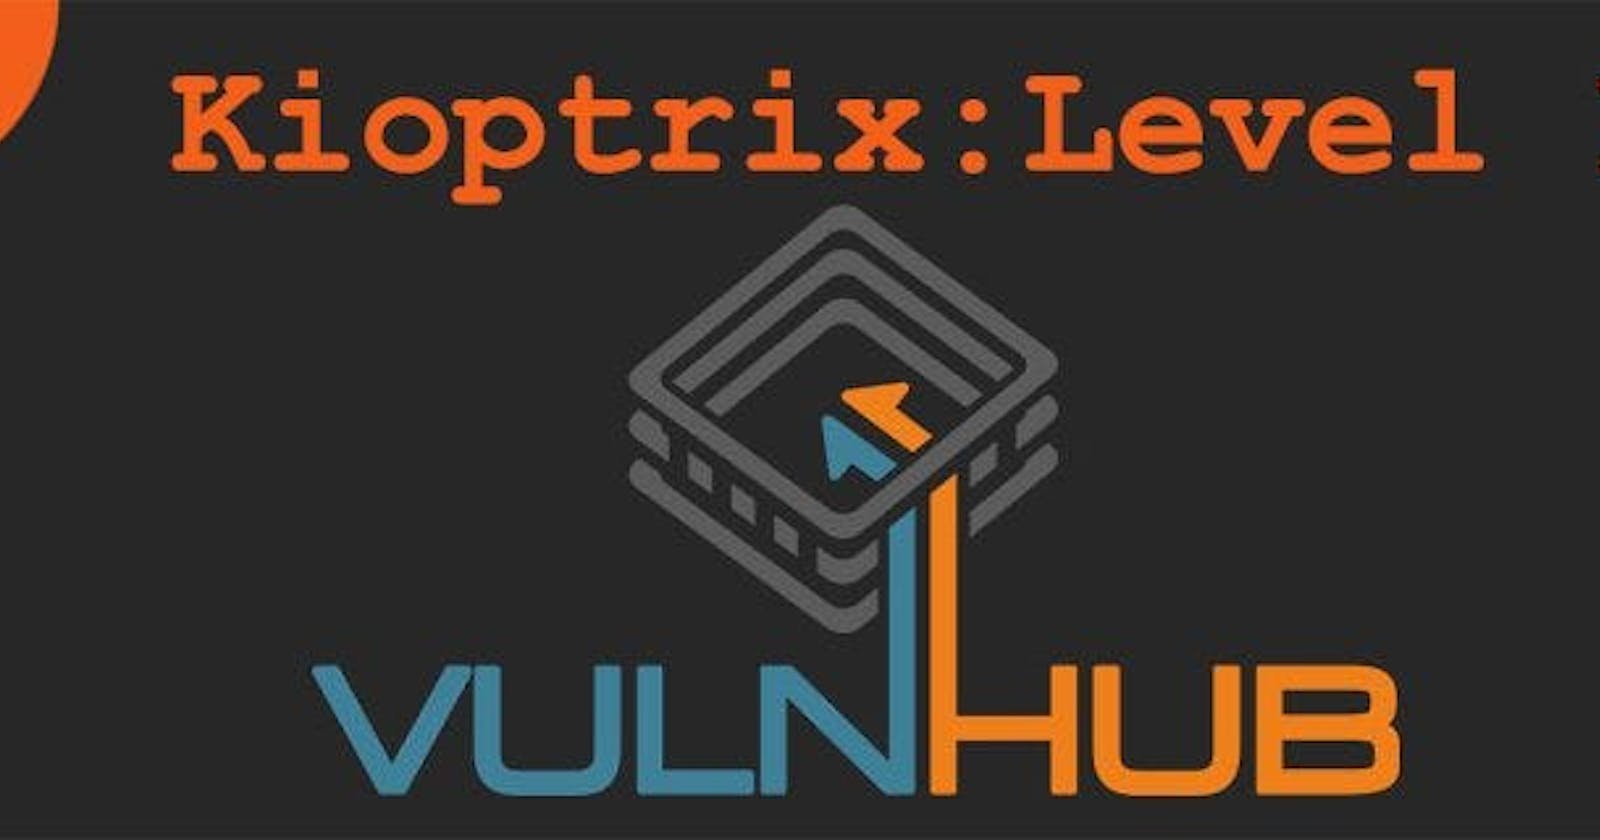 Kioptrix: Level 1 [Vulnhub] Walkthrough